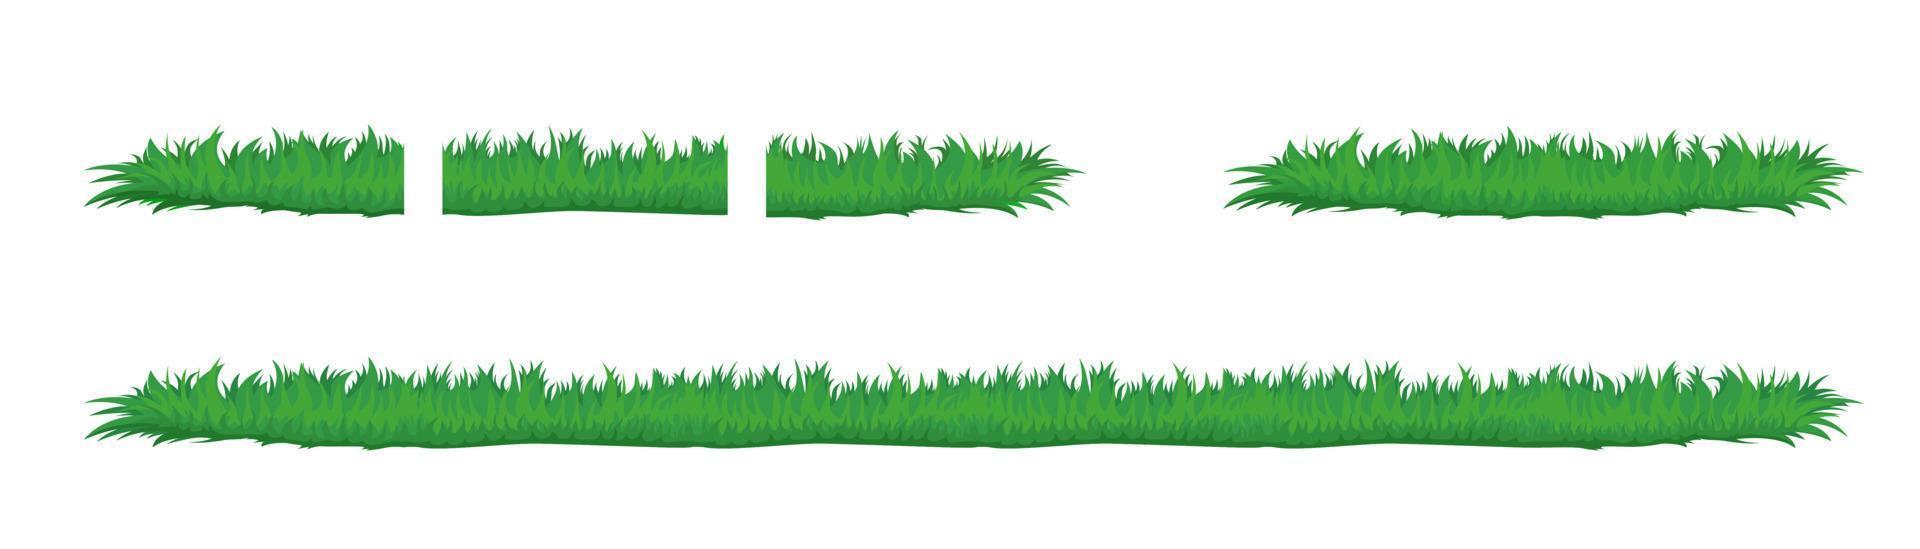 grama de primavera sem costura. natural verdes saturado plataforma gramado gramado luxuriante horizontais ecológicas naturais jovem vetor folhagem verde aberto brotos lindos clipart de ervas padrão sem emenda.